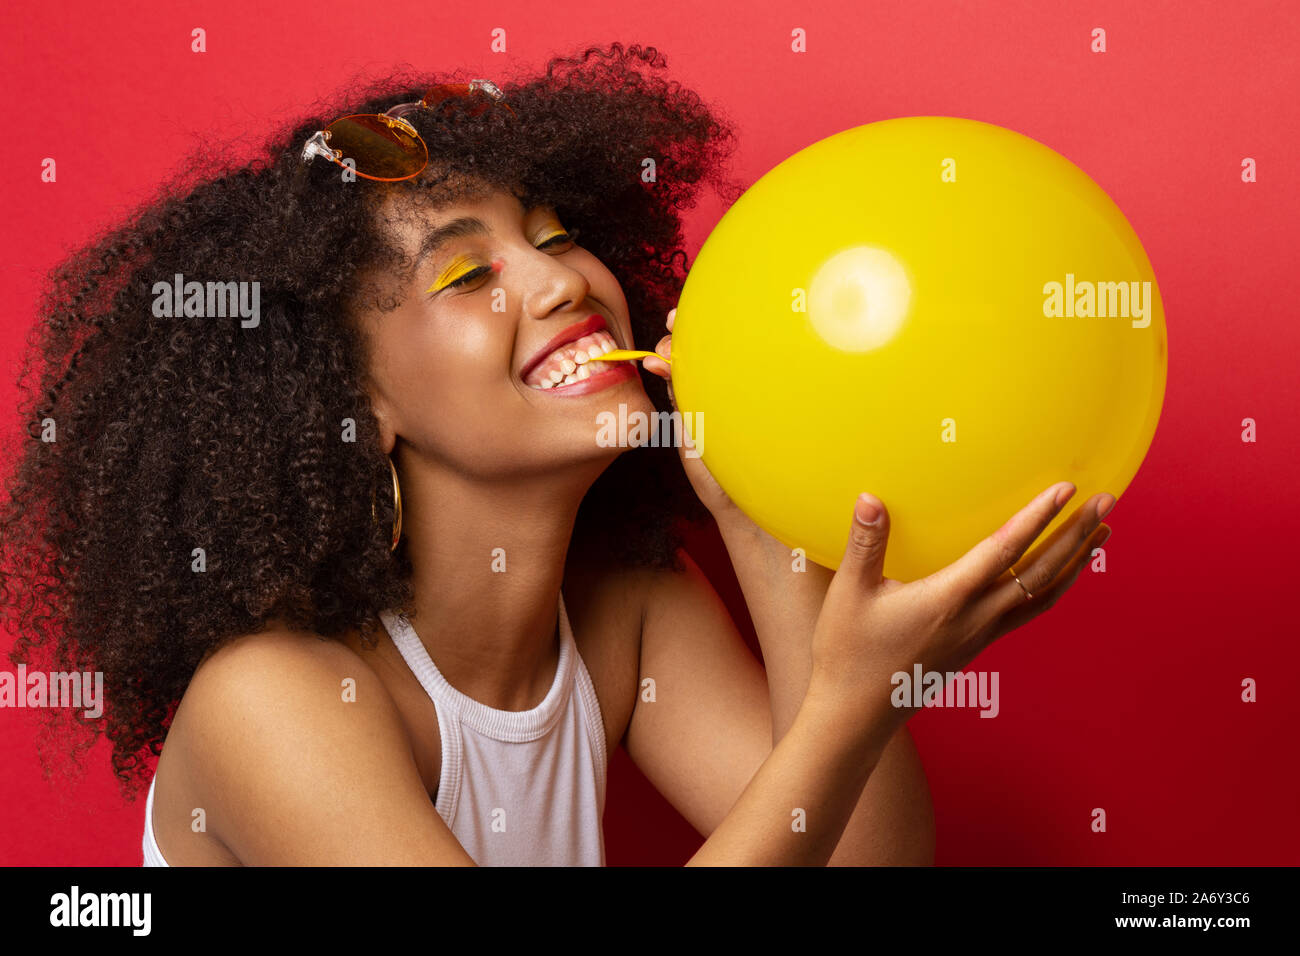 Mulatte Modell pumpt einen gelben Ballon Stockfoto